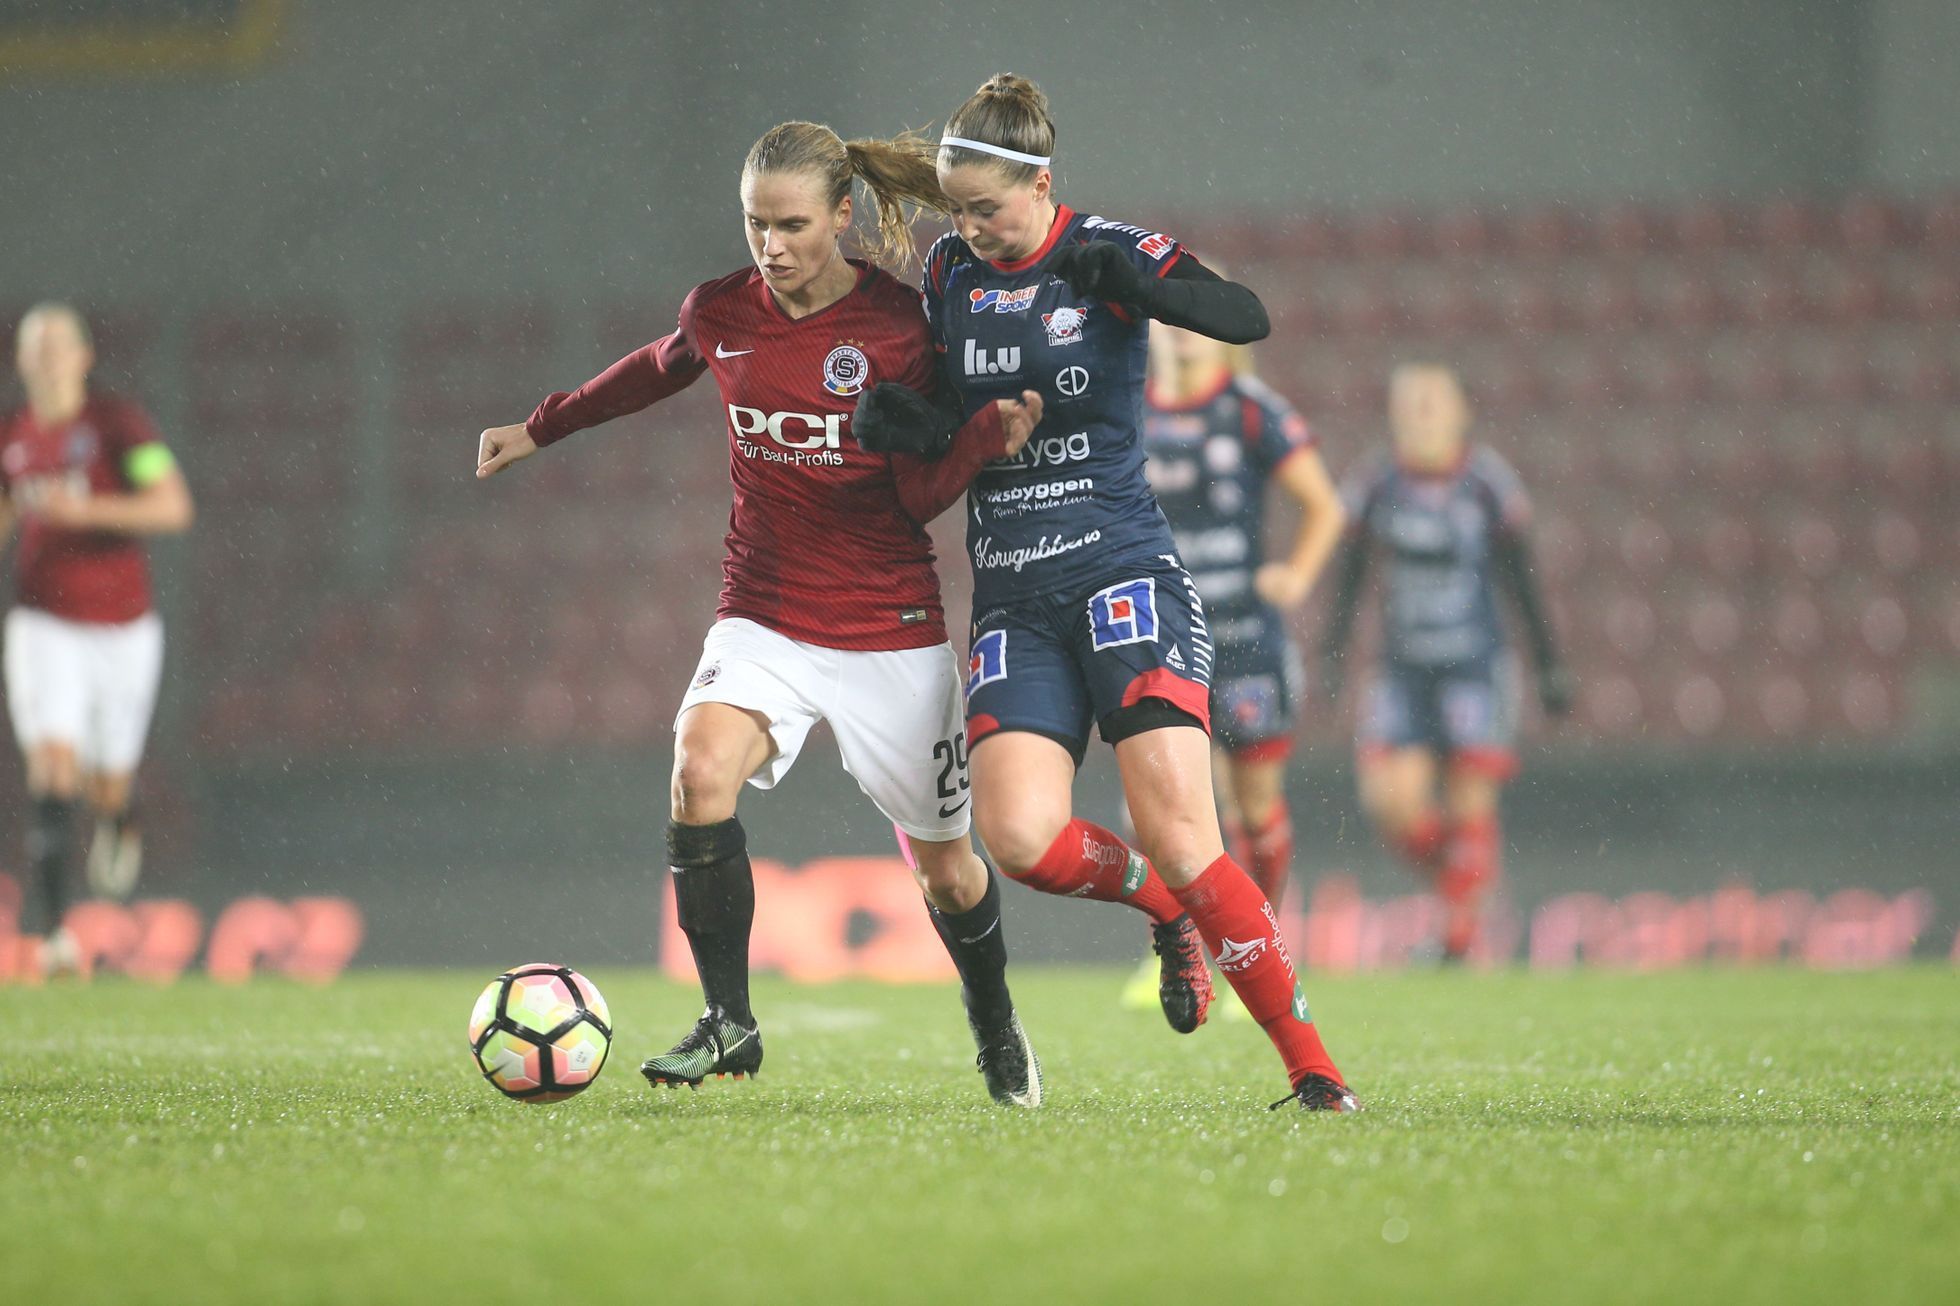 Ligy mistryň 2017/18: Sparta - Linköping, osmifinále